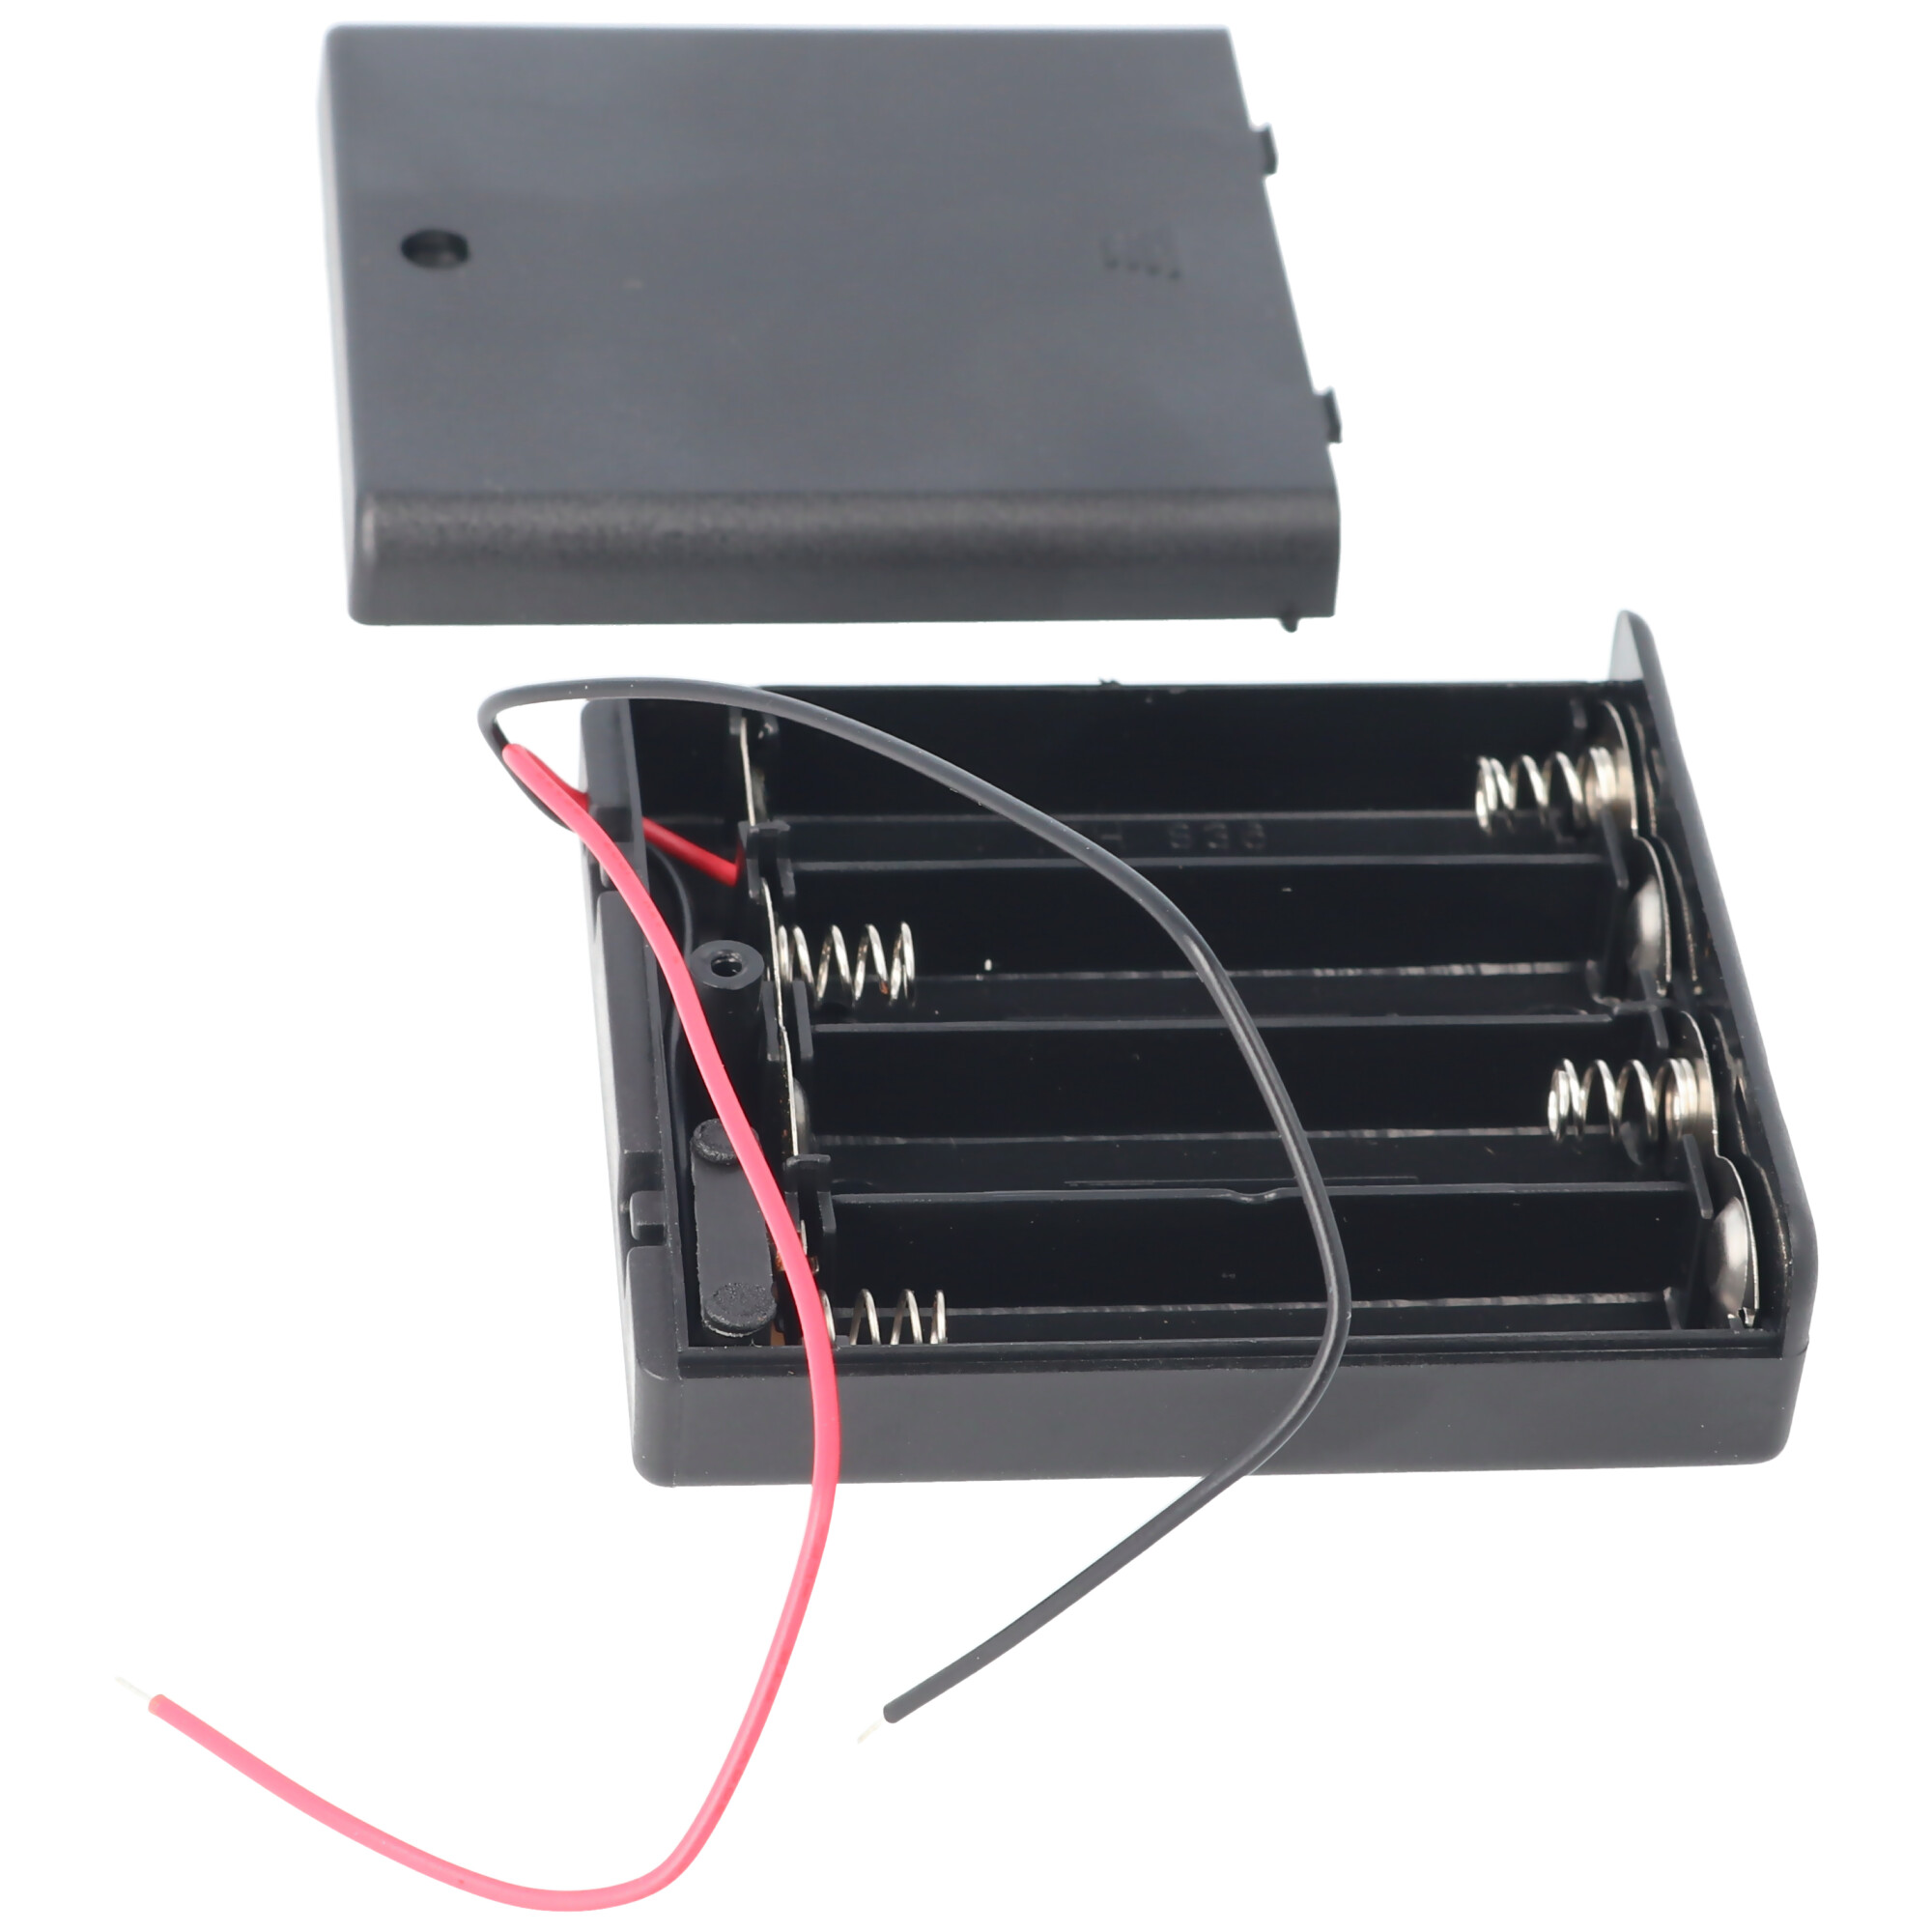 AccuCell Batteriehalter für 4 Stück Mignon AA HR-3, LR6 Batterien oder Akkus mit Deckel und Kabel